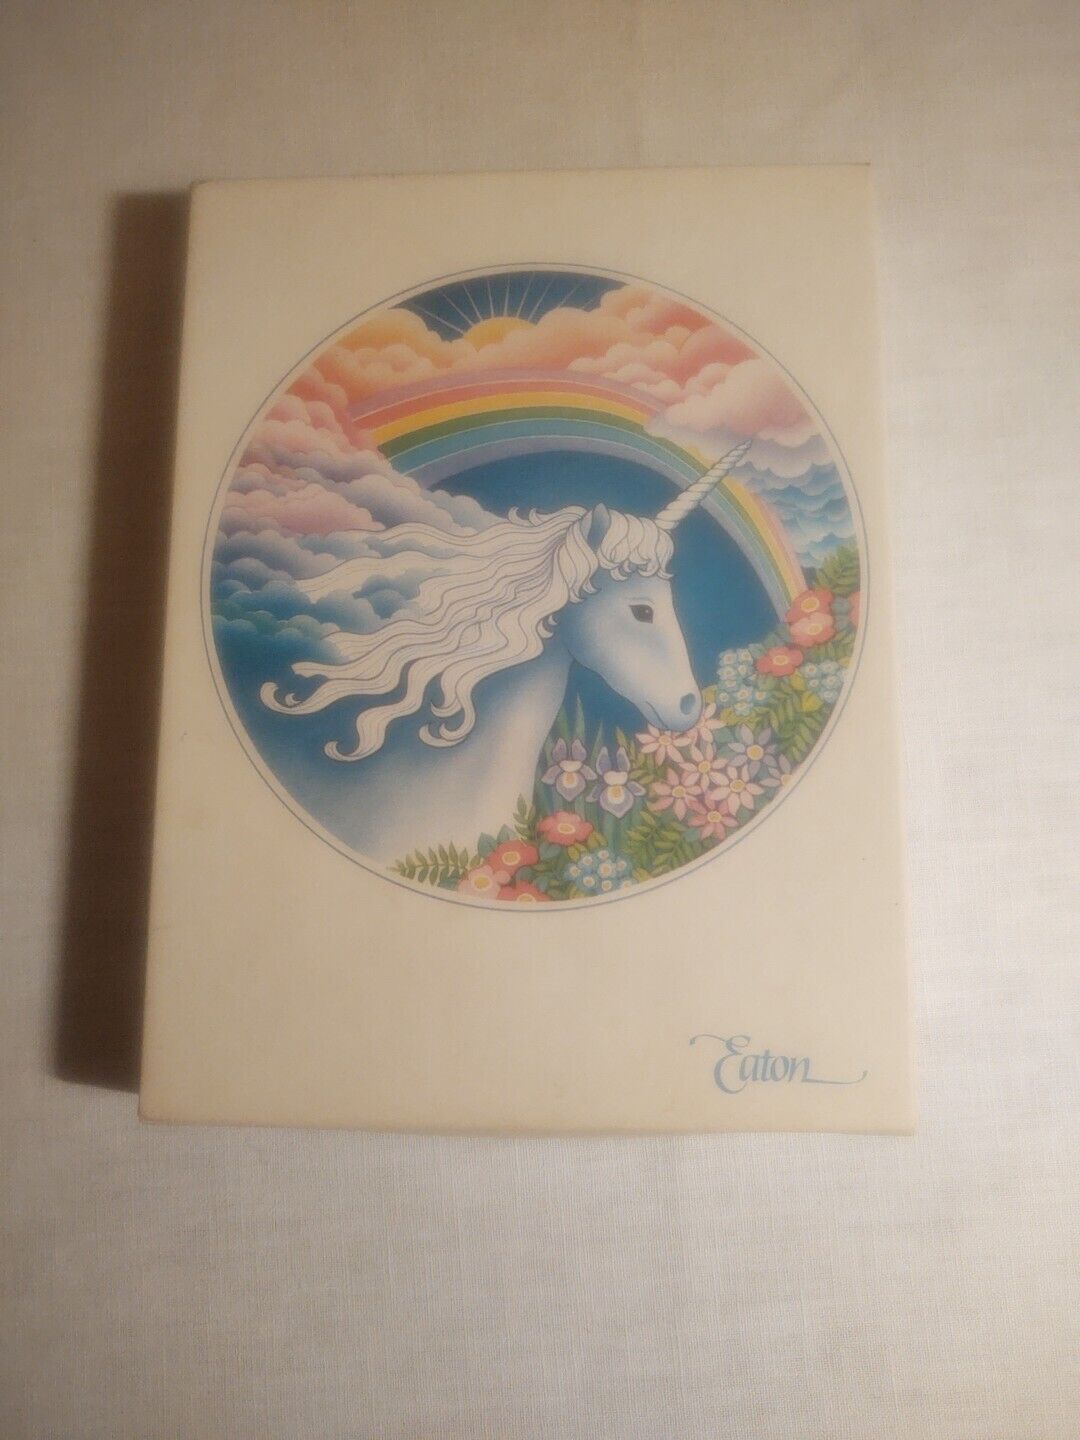 Vtg Eaton Unicorn Fantasy Stationery Rainbow 8 Decorated 8 Plain 10 Envelopes